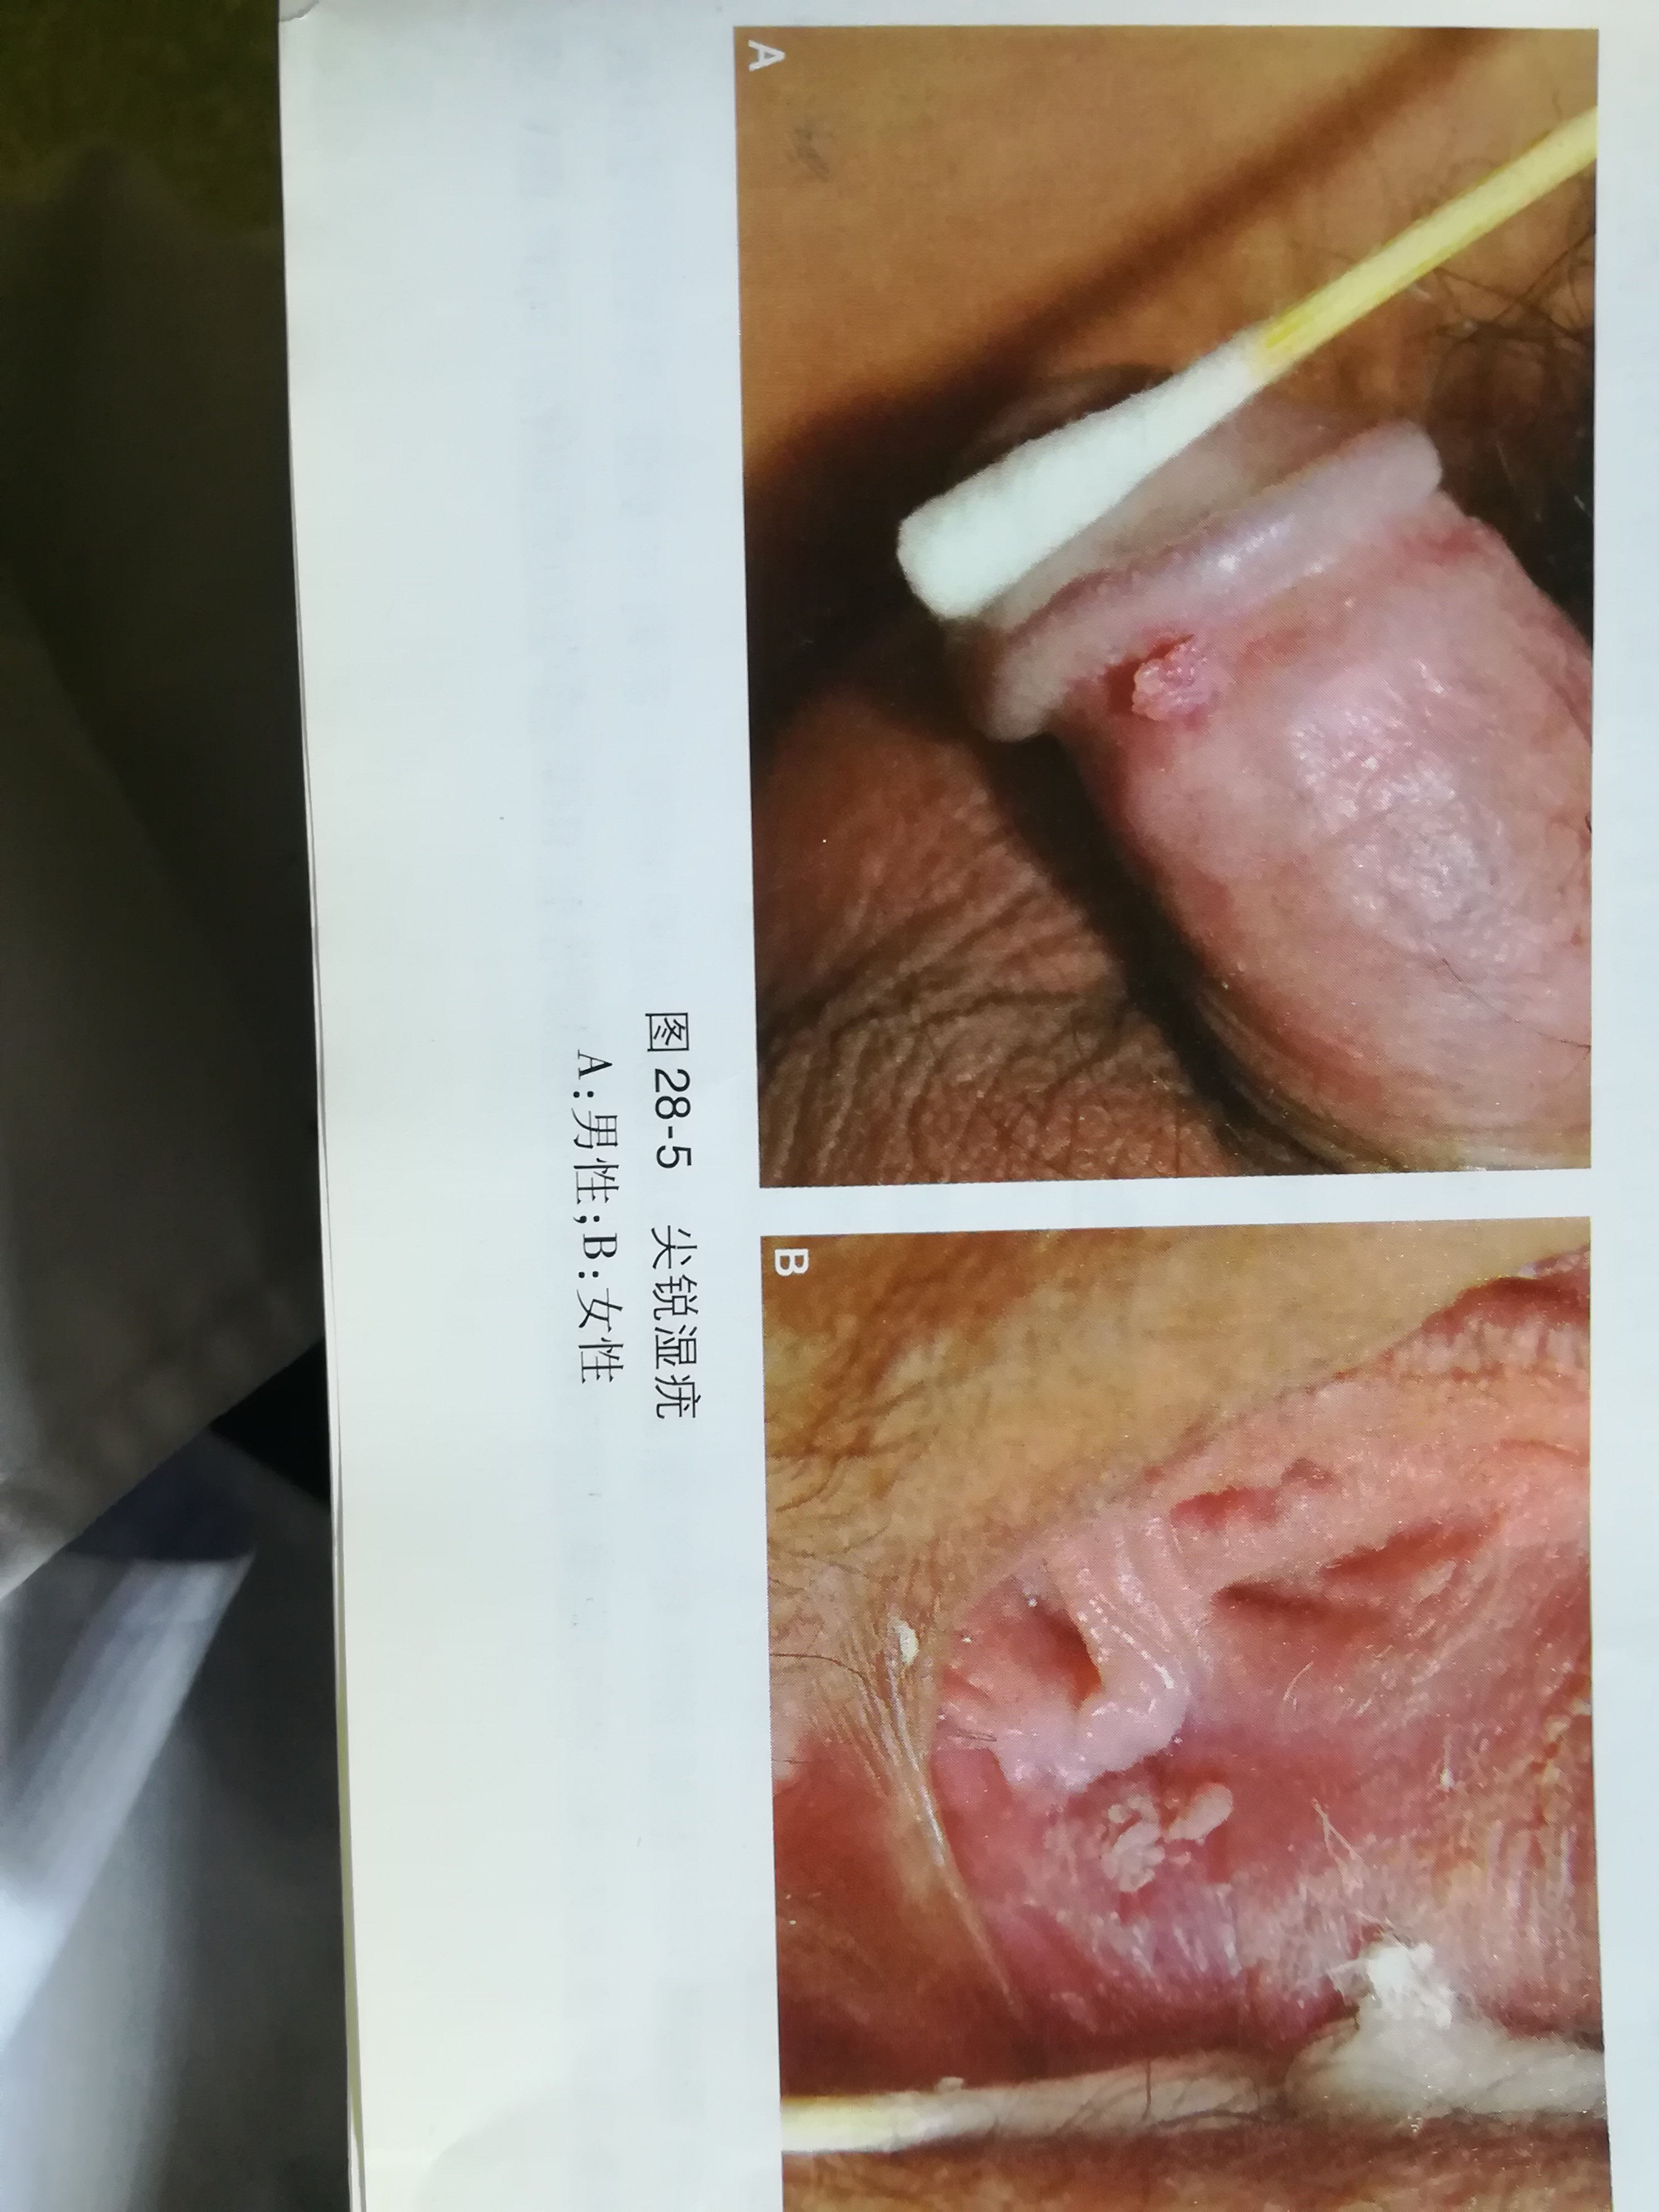 王伟 文章列表  尖锐湿疣:是由人乳头瘤病毒所致,常发生在肛门及外